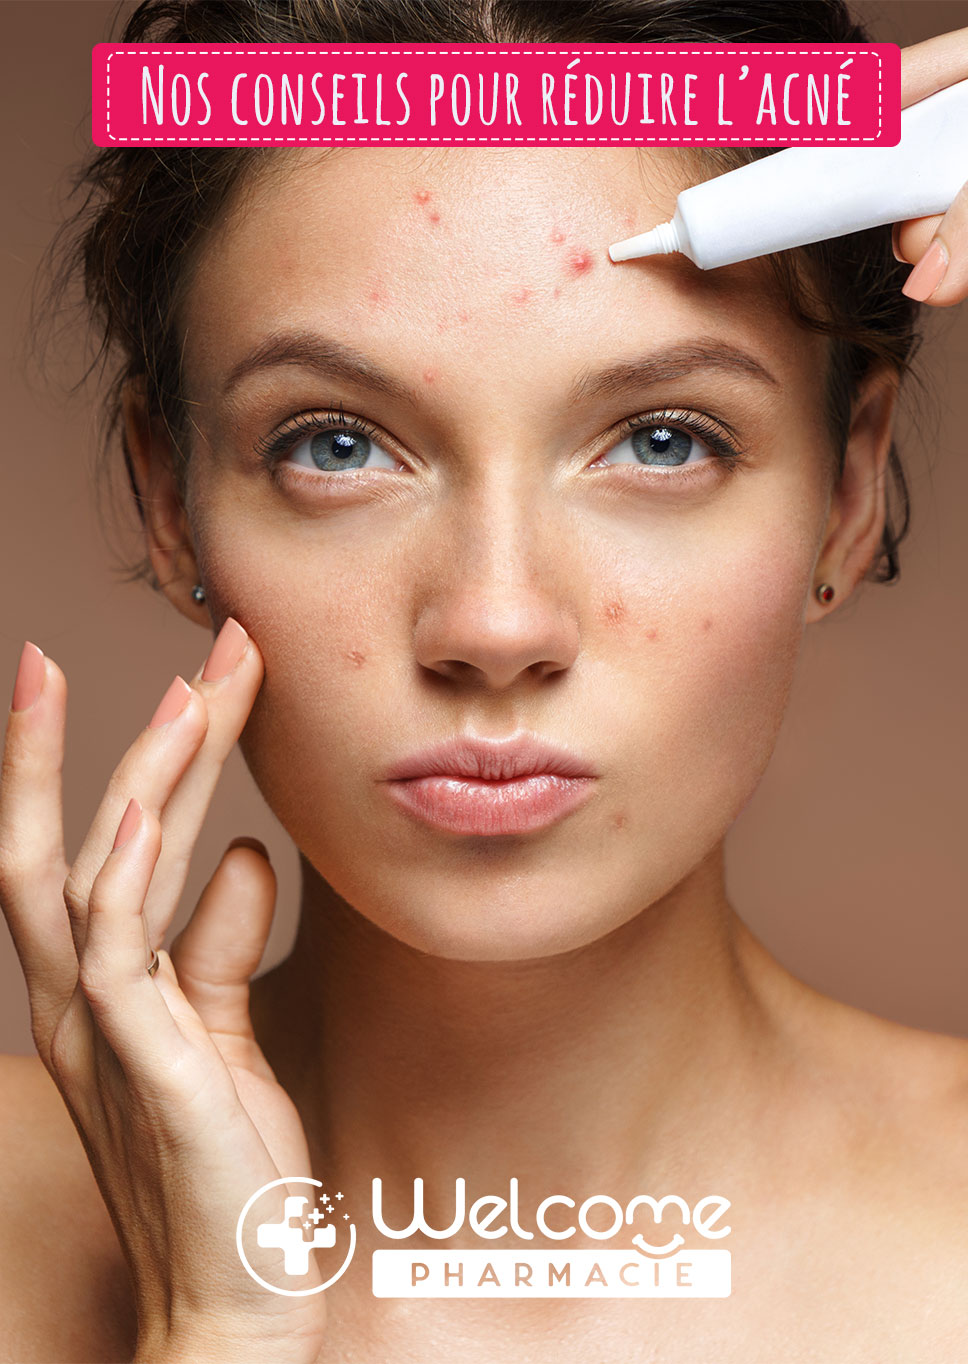 Les gestes simples à adopter pour réduire l’acné